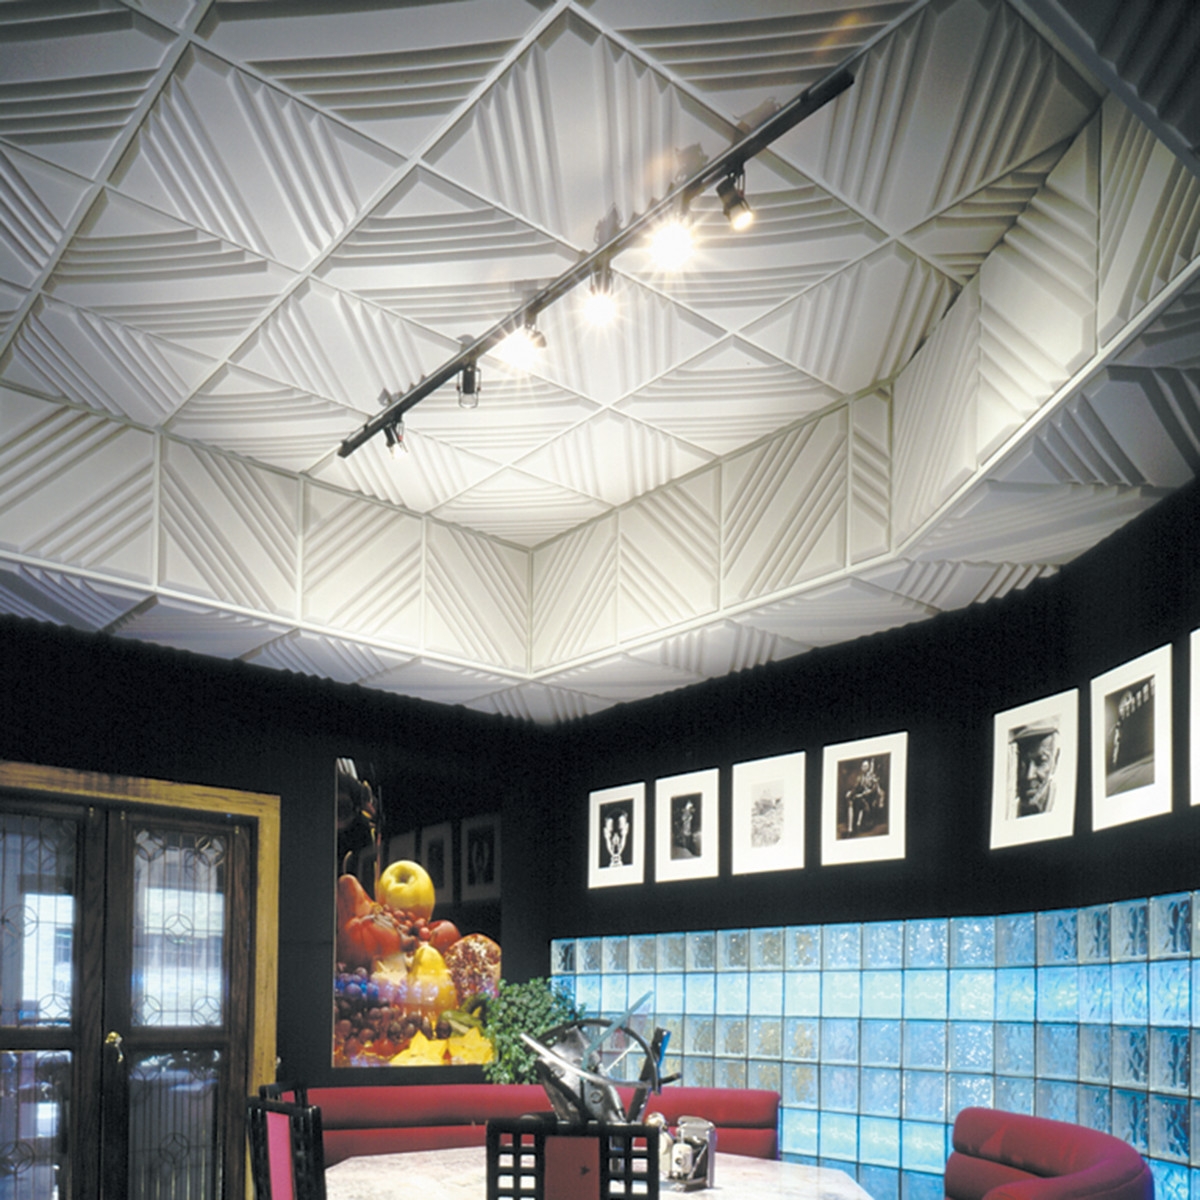 Acoustic Tiles For Ceilingcontour ceiling tiles steven kleins sound control room inc